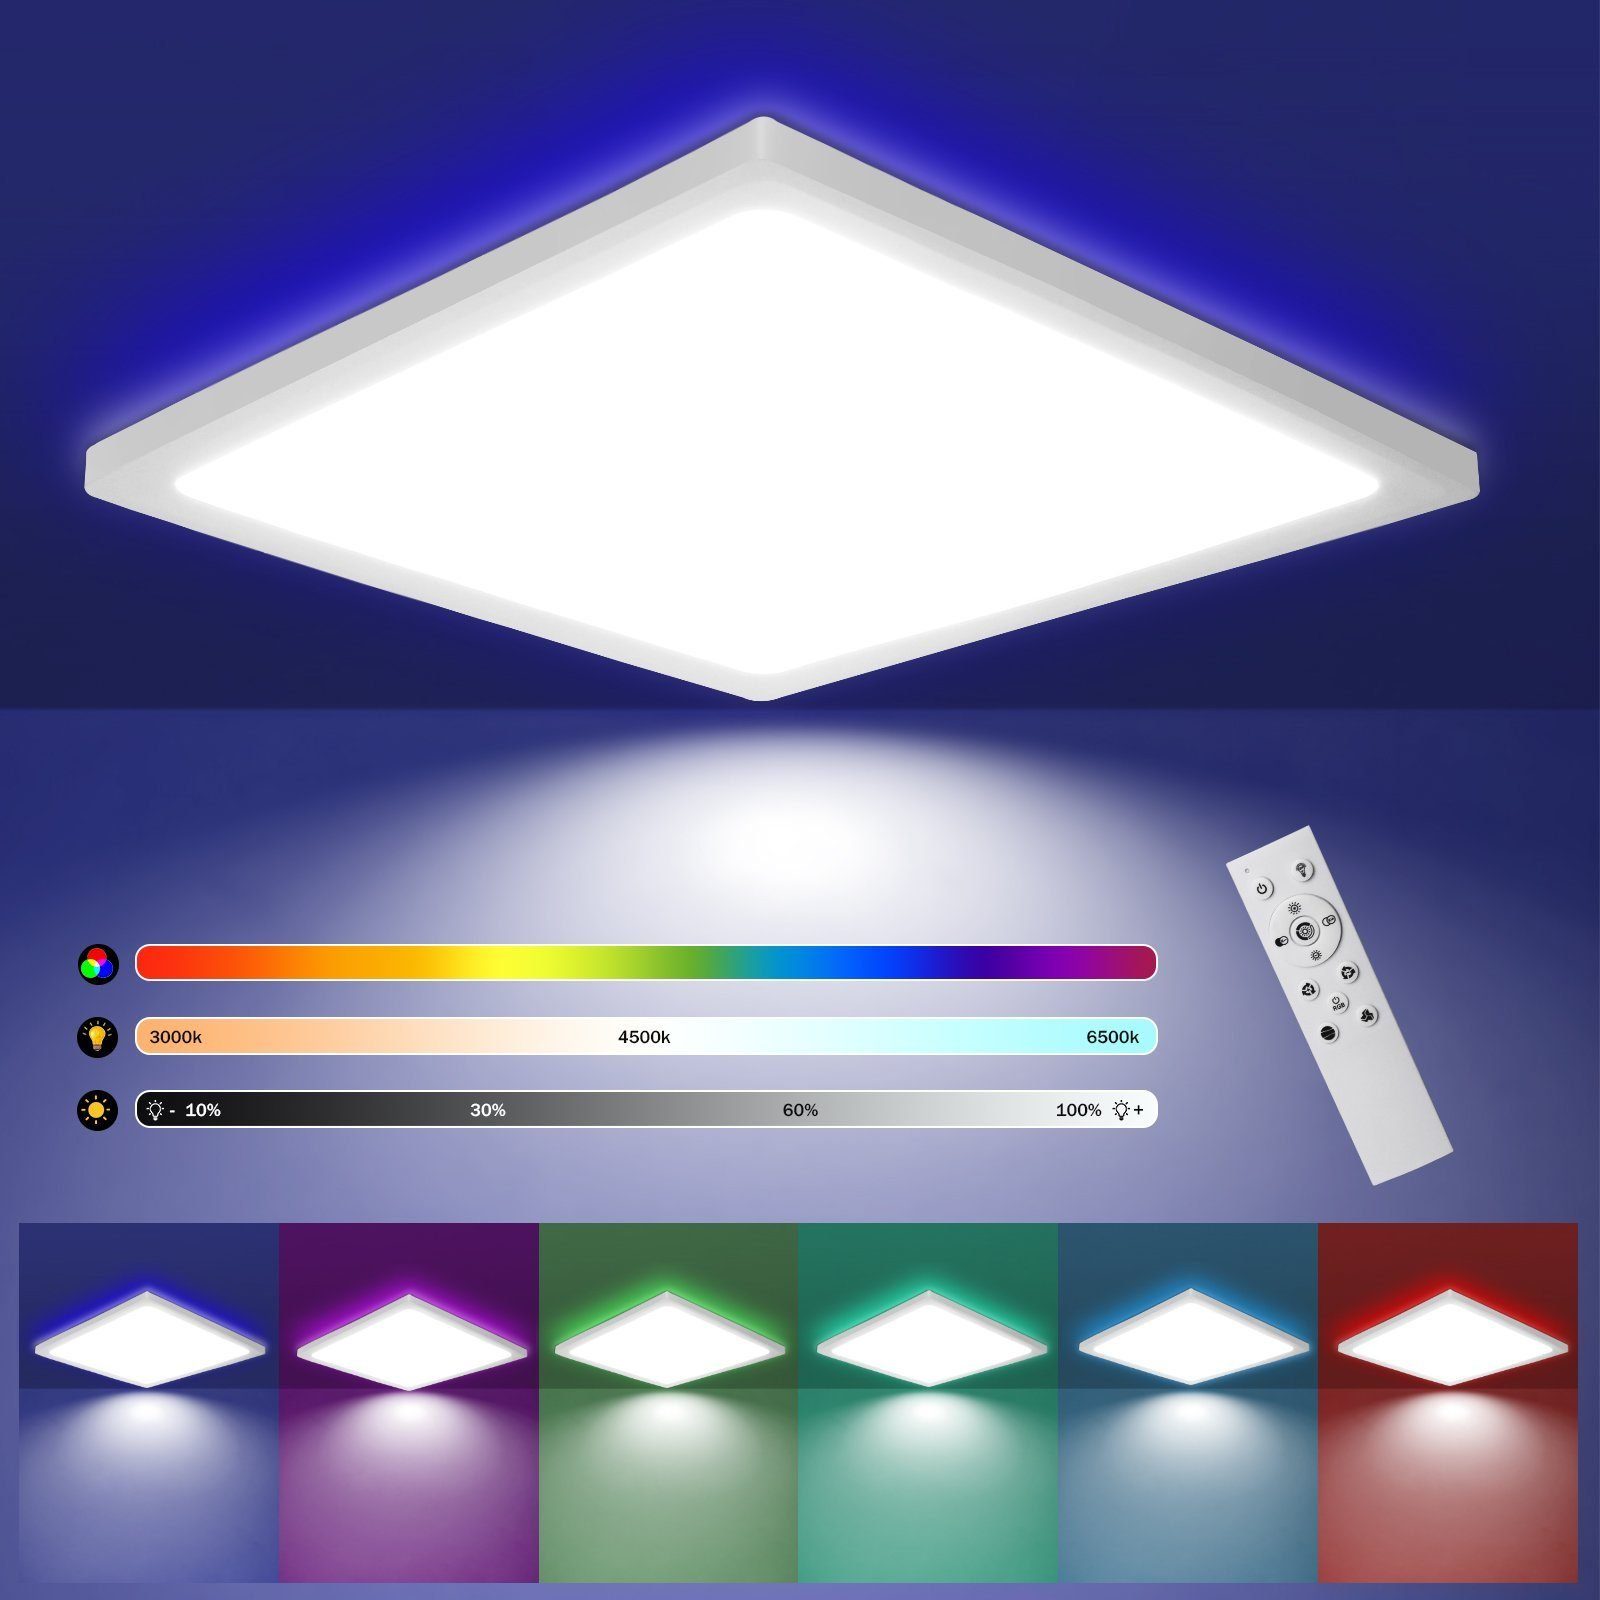 Badezimmer Decke IP44 Lampen online kaufen | OTTO